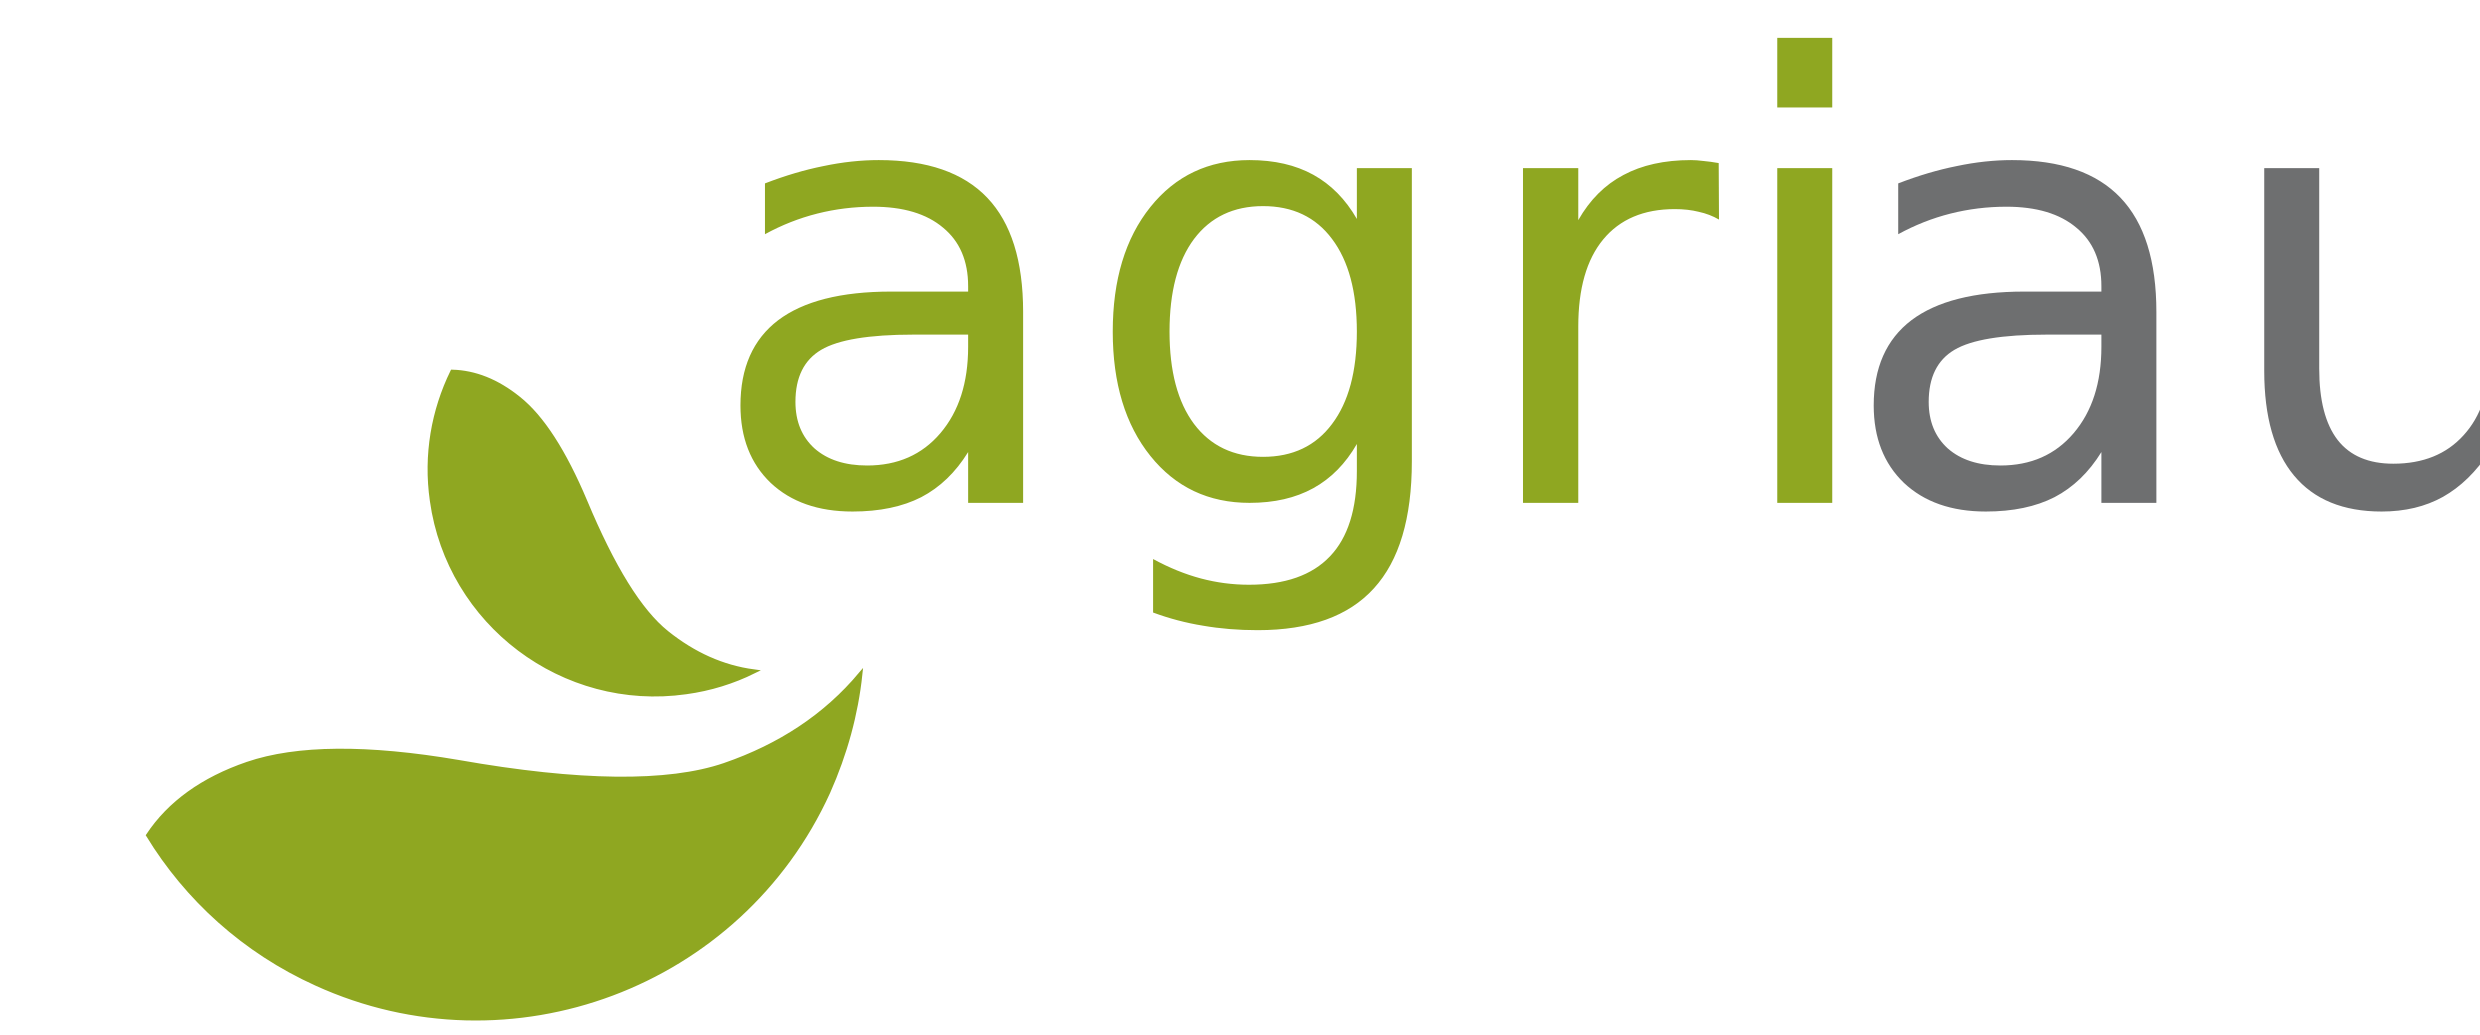 Agriauto - Gestión integral de fincas agrícolas, consultoría agraria